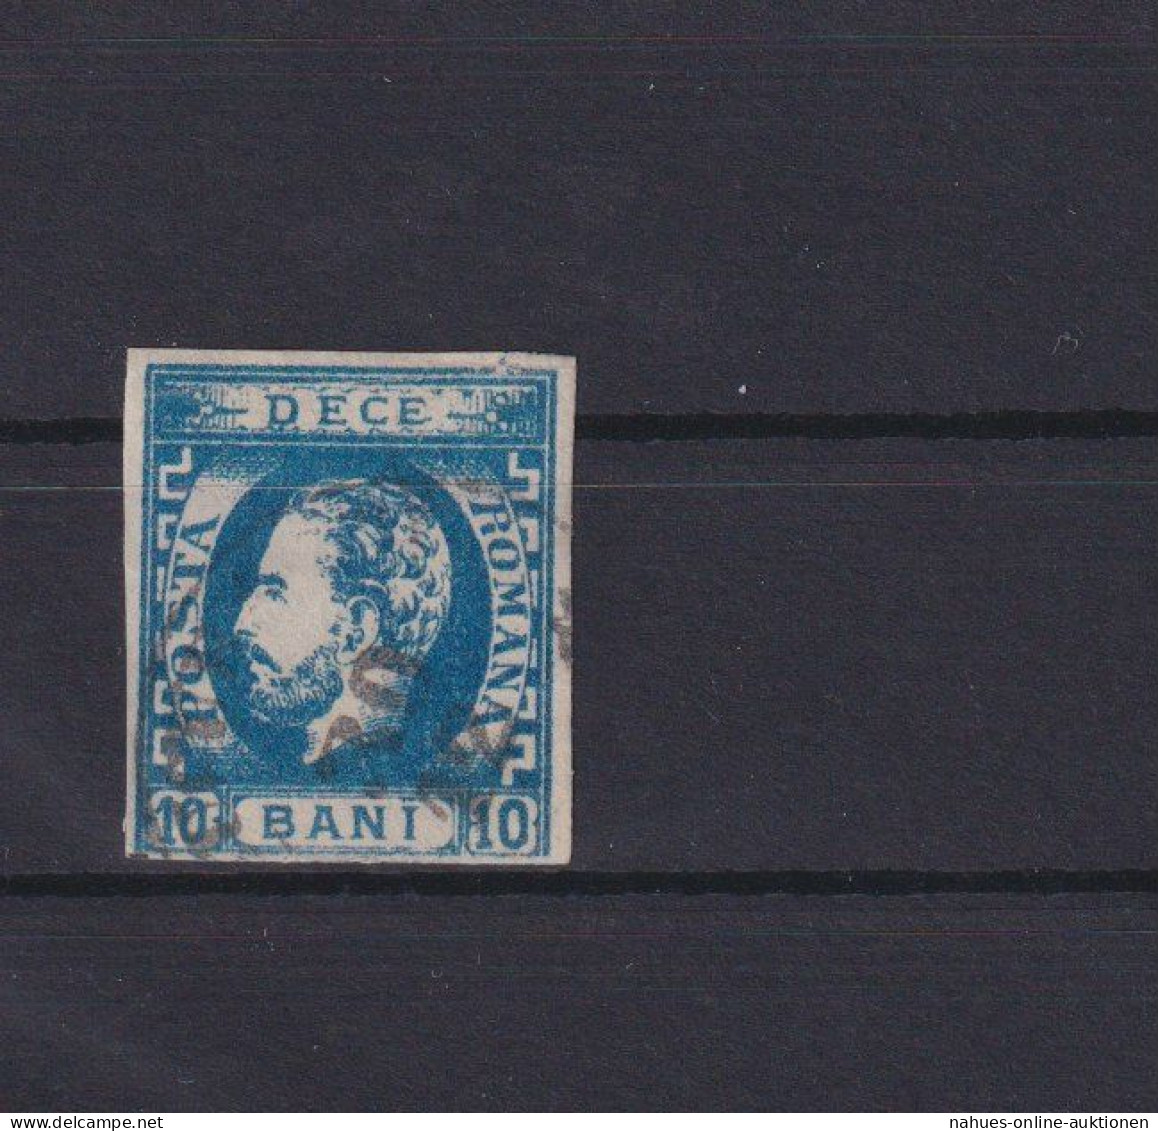 Rumänien Fürst Karl I. 29 I. 10 Bani Blau Ungebraucht Kat. 80,00 Ausgabe 1871 - Briefe U. Dokumente